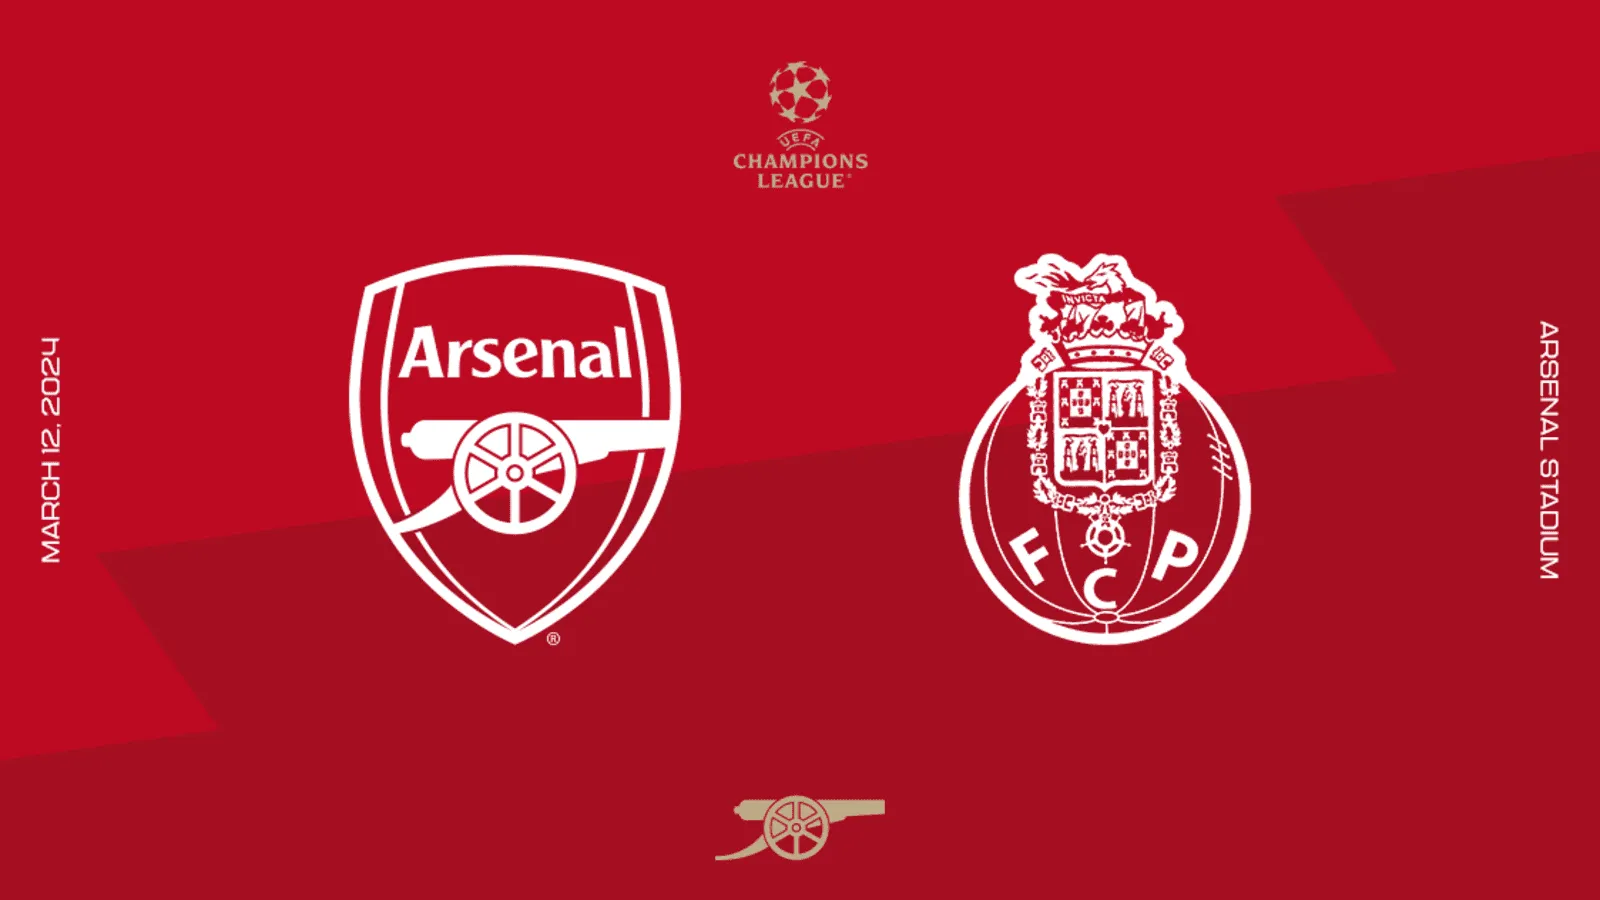 Arsenal-Porto, alle 21 da Londra torna la Champions League: ecco come seguirla in streaming gratis